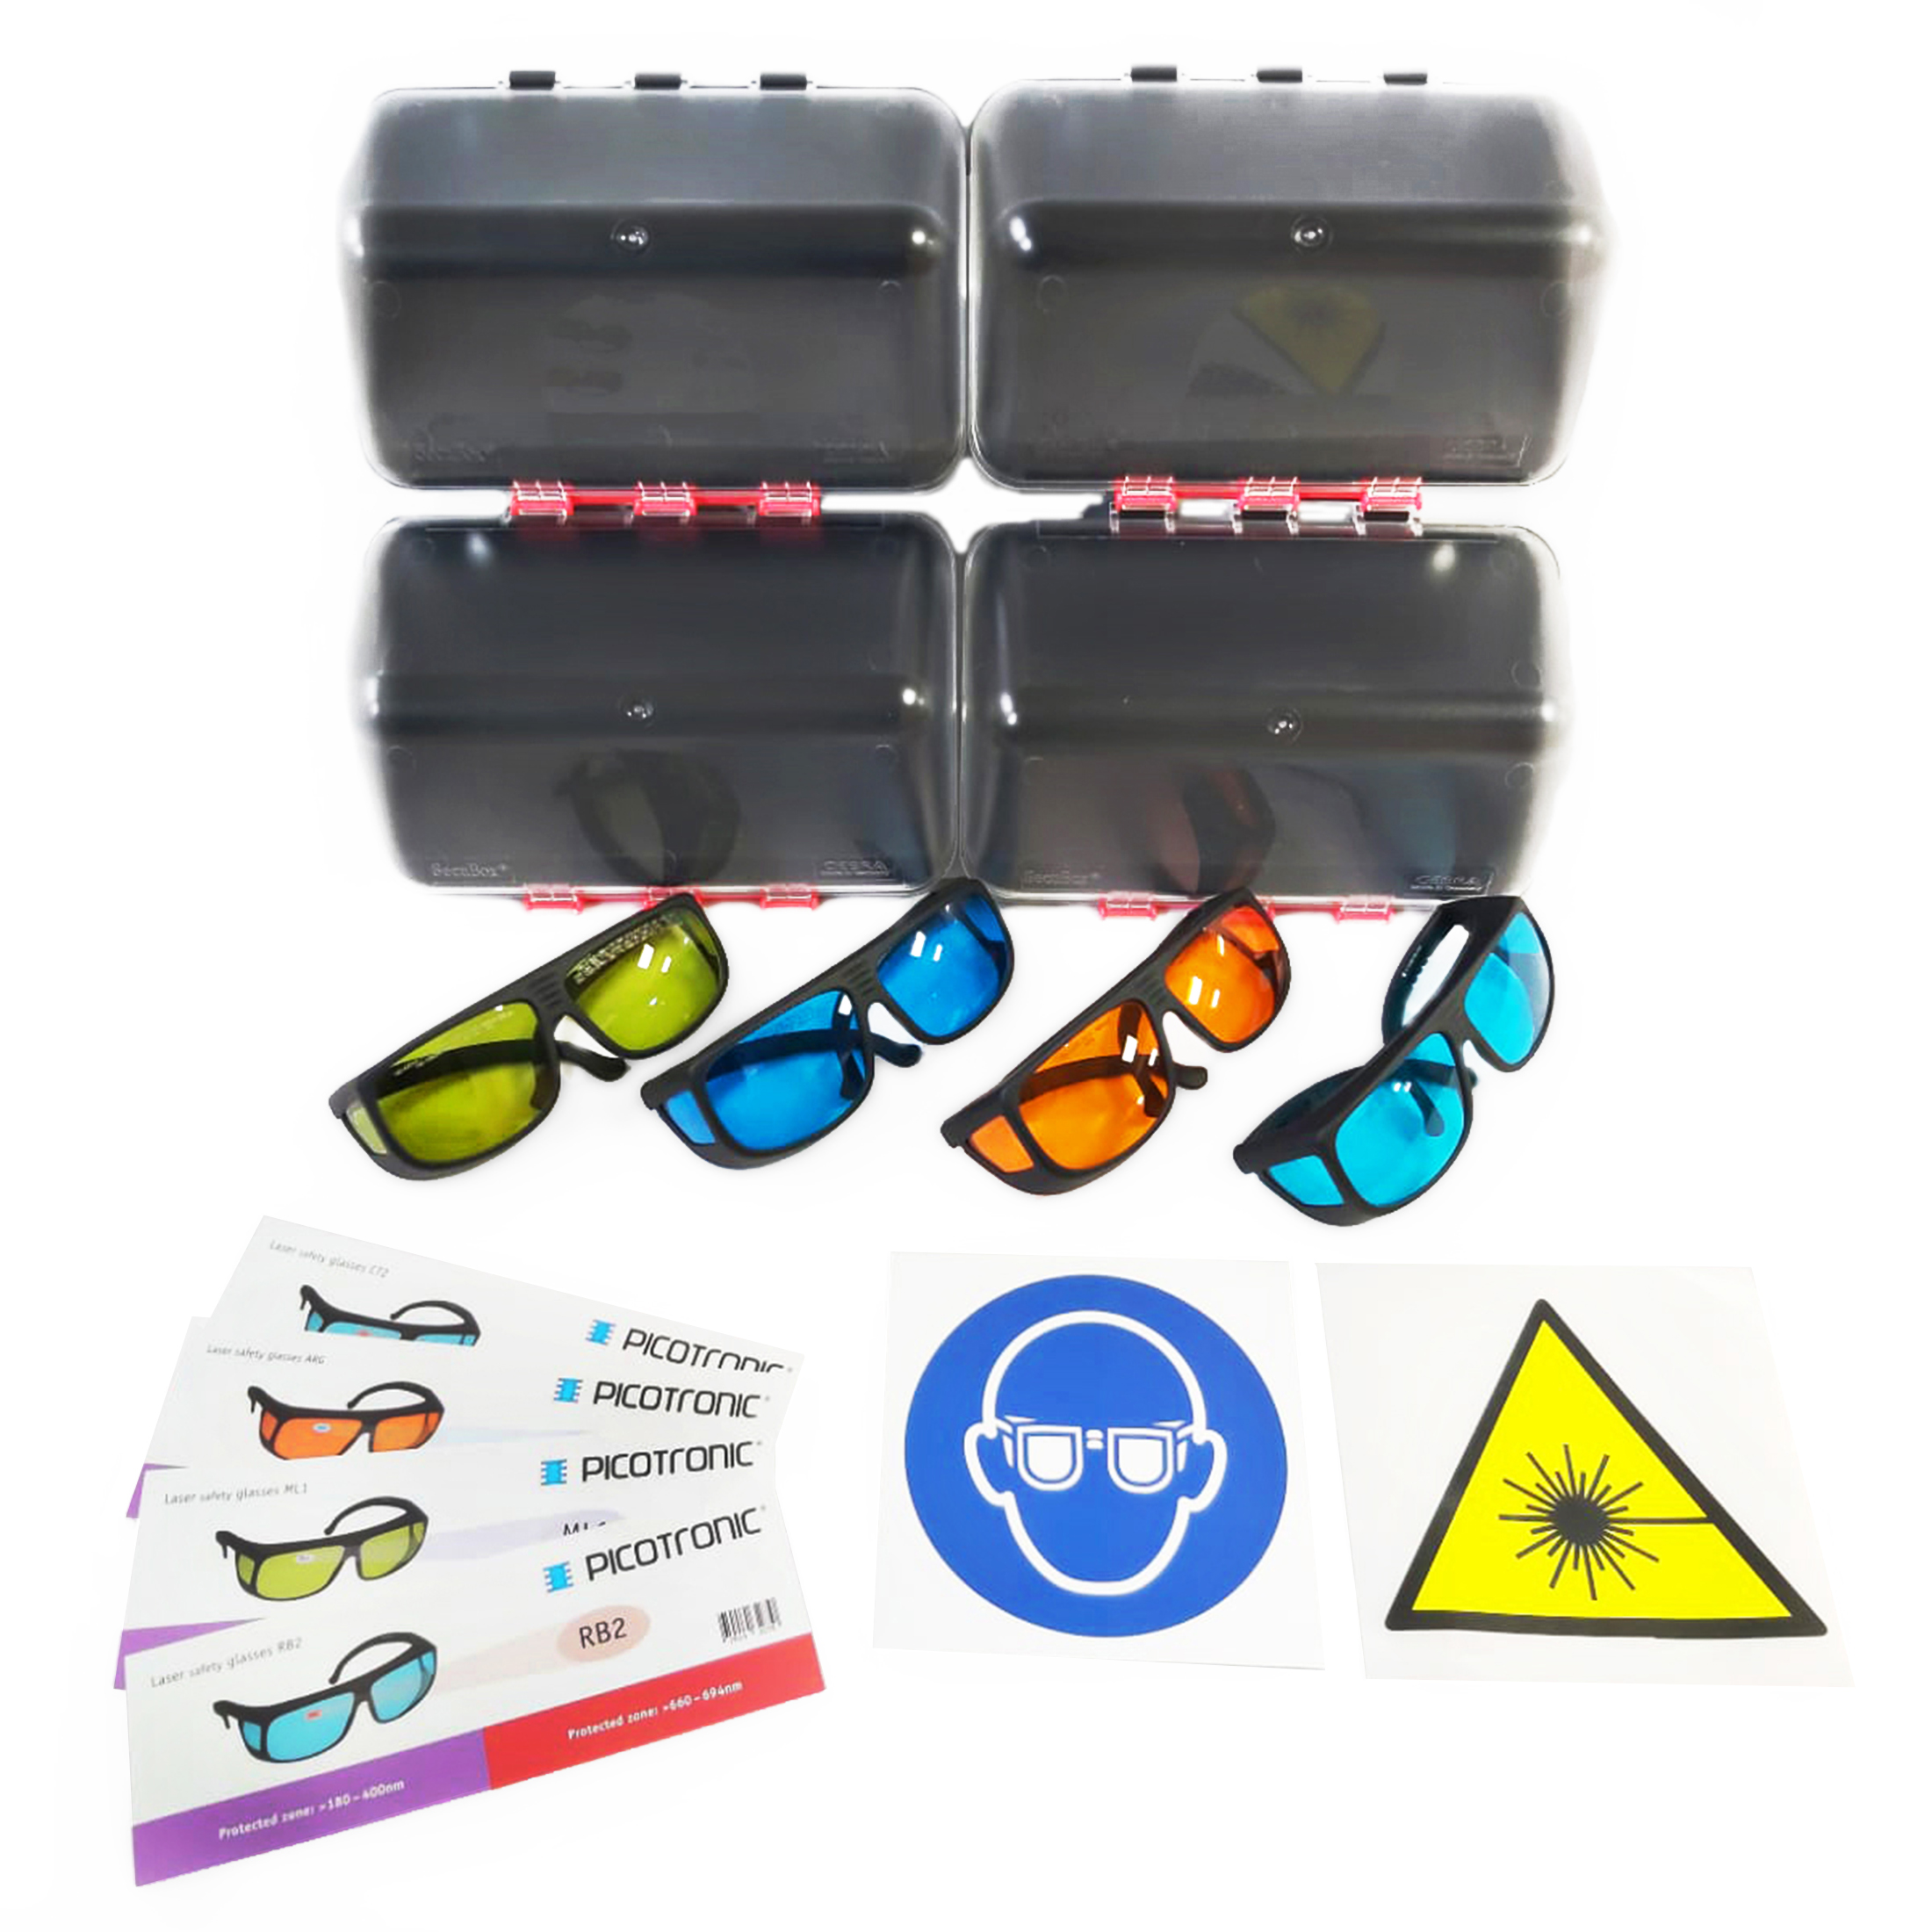 Laserschutzbrillen-Set, zertifiziert nach DIN EN207, 180-1100nm. Zum Laserschweißen, Laserschneiden…